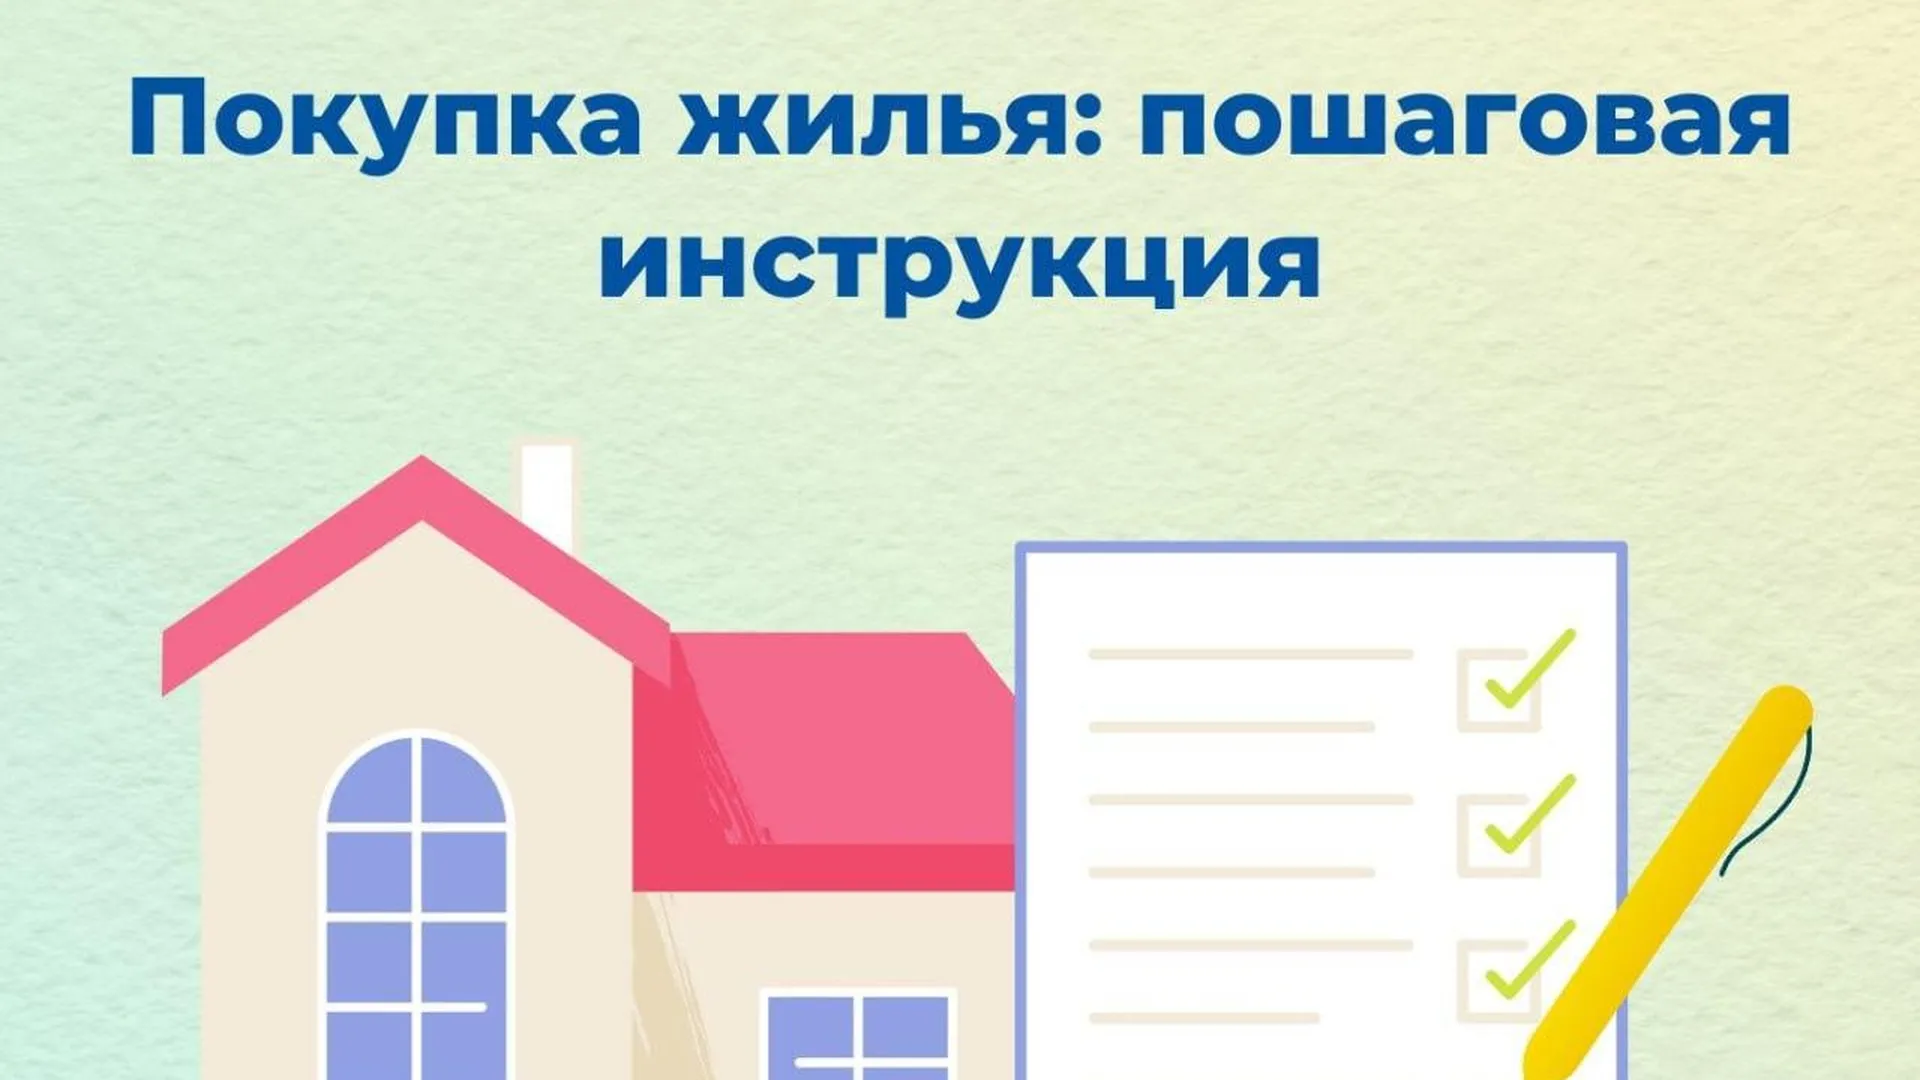 Жителям Подмосковья предоставили пошаговую инструкцию по покупке жилья